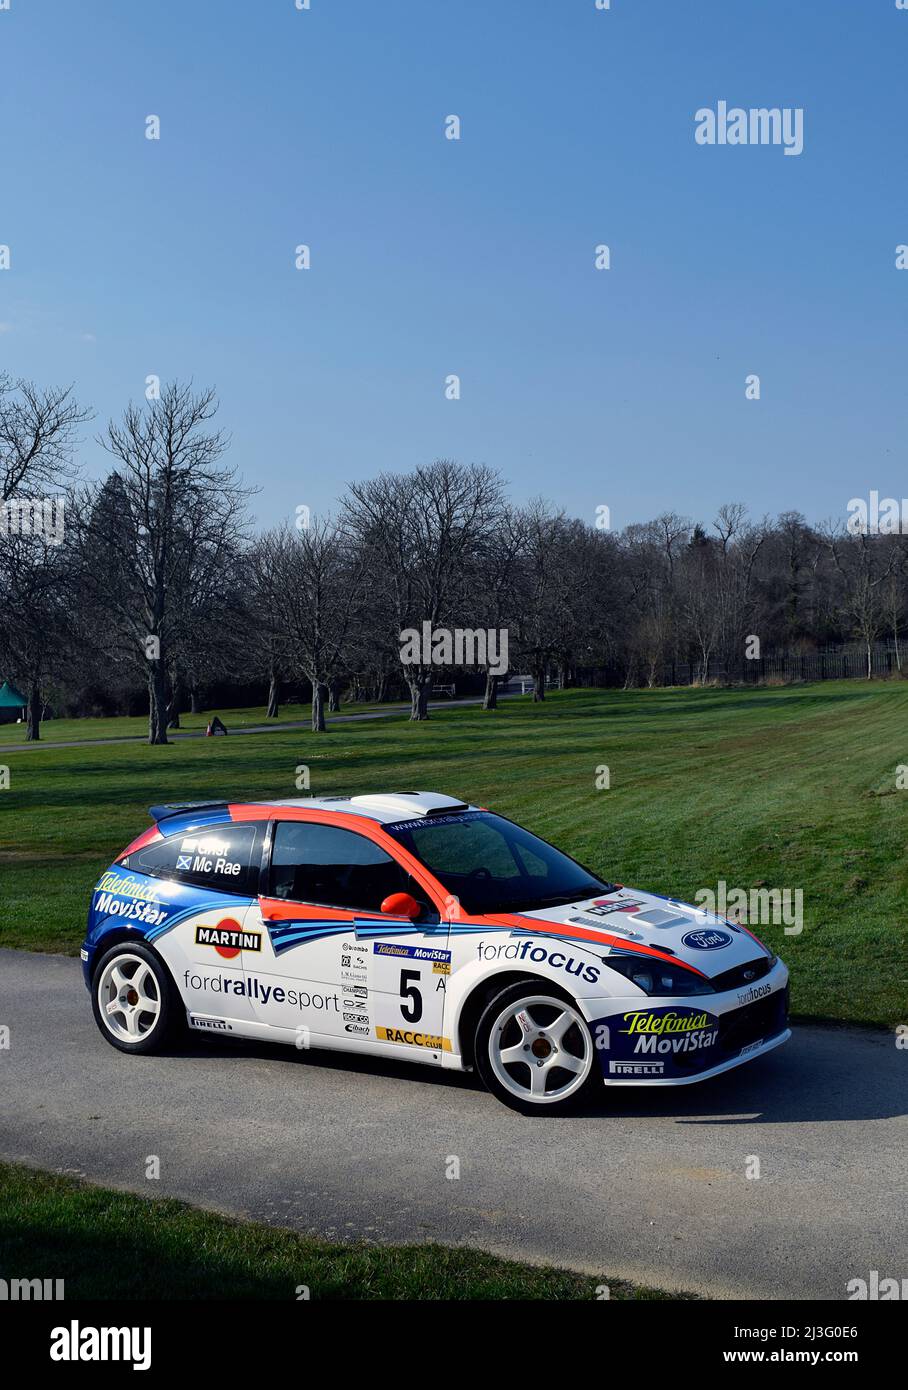 2002 Ford Focus WRC Foto de stock